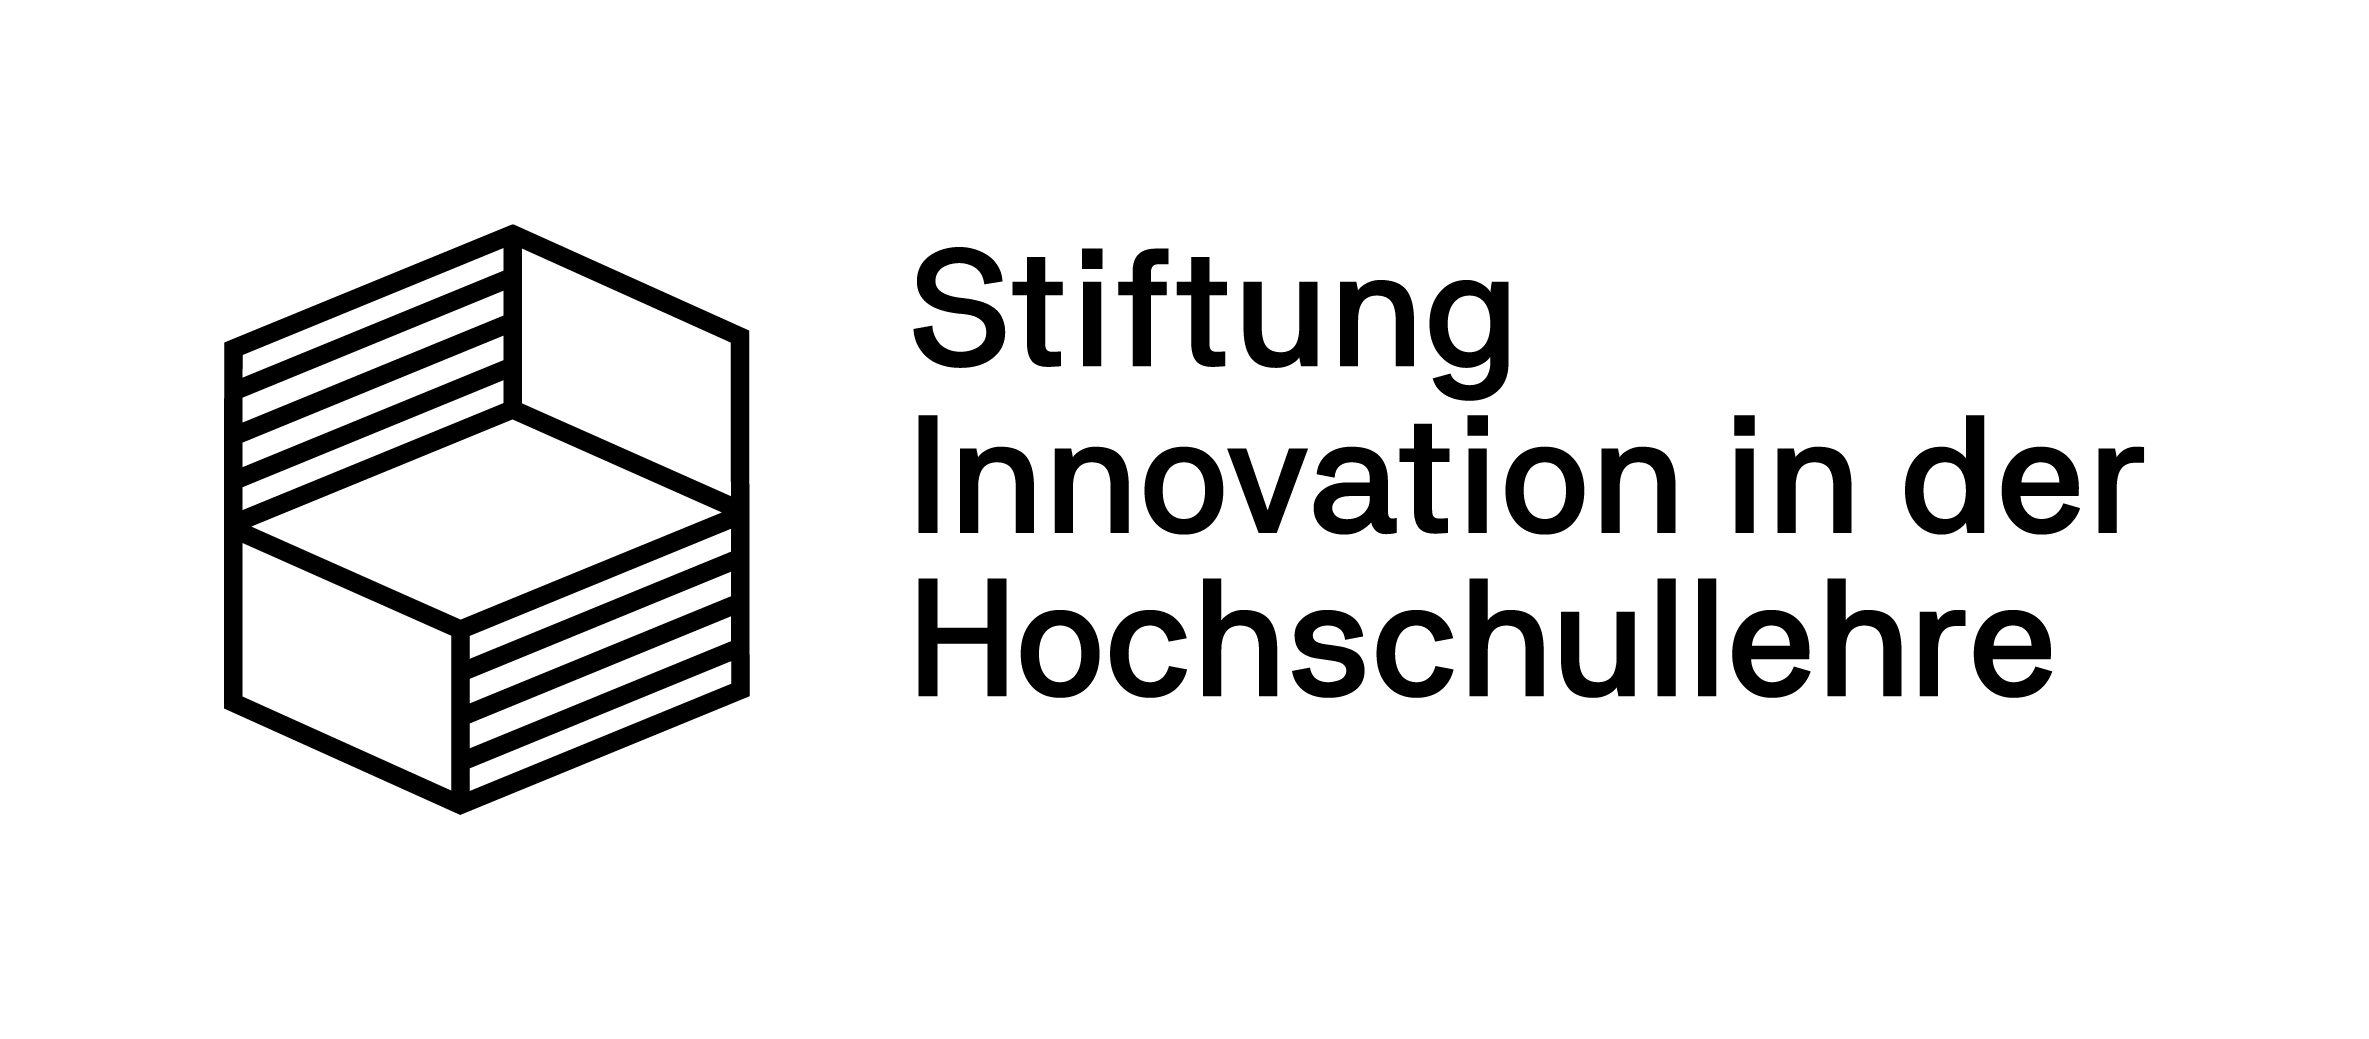 Logo Stiftung Innovation in der Hochschullehre